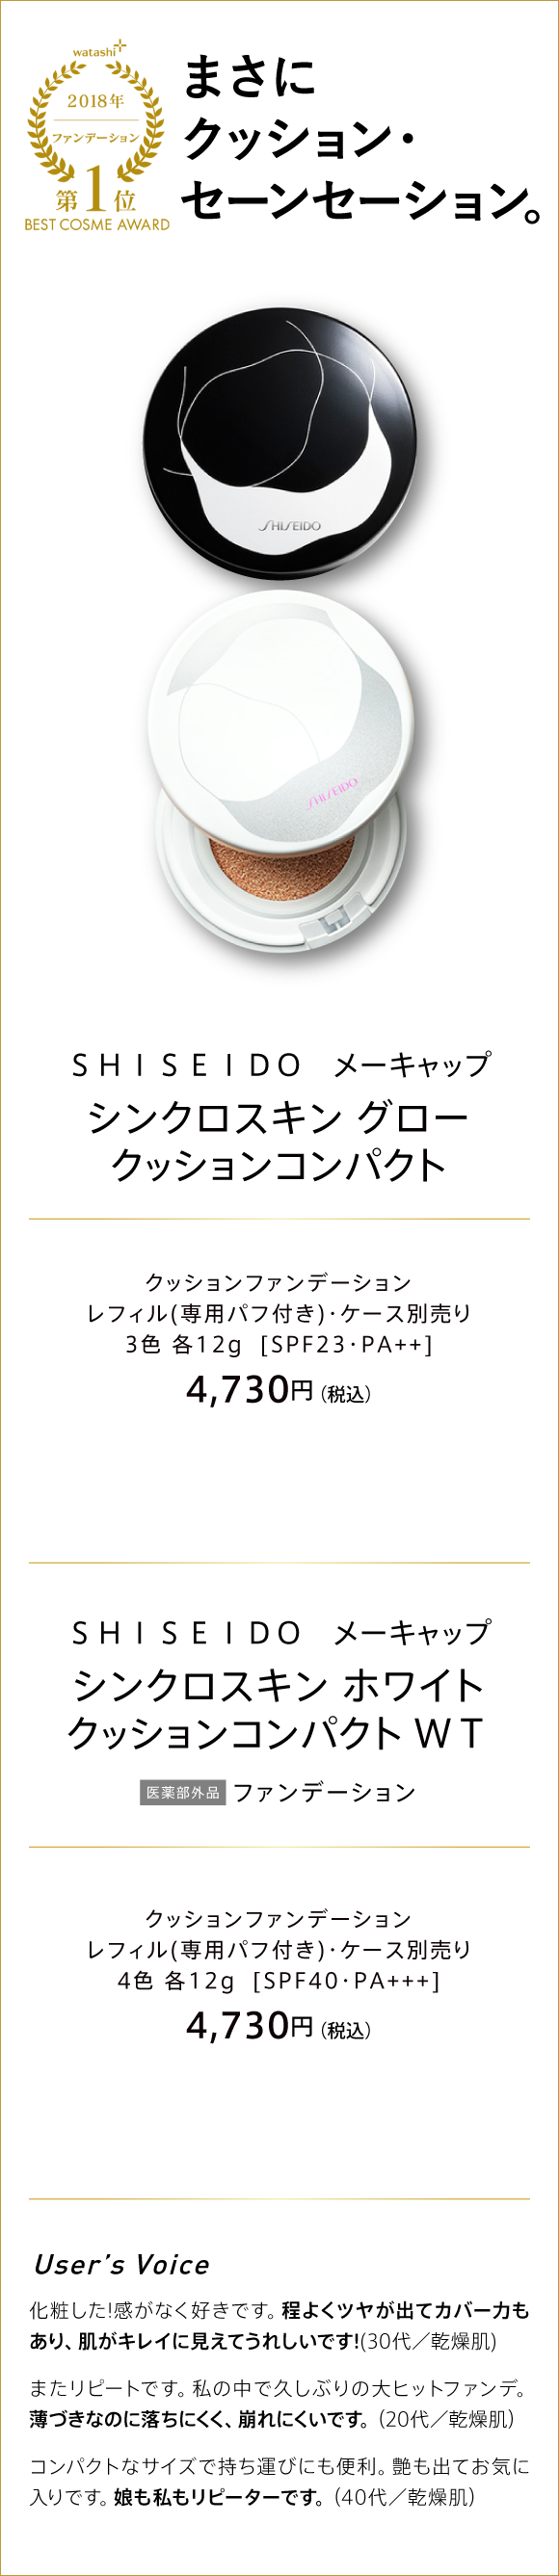 watashi+ 2018 ファンデーション 第1位 BEST COSME AWARD まさにクッション・セーンセーション。 SHISEIDO メーキャップ シンクロスキン グロー クッションコンパクト クッションファンデーション レフィル(専用パフ付き)・ケース別売り 3色 各12g [SPF23・PA++] 4,730円(税込)　SHISEIDO メーキャップ シンクロスキン ホワイト クッションコンパクト WT 医薬部外品 ファンデーション クッションファンデーション レフィル(専用パフ付き)・ケース別売り 4色 各12g [SPF40・PA+++] 4,730円(税込)